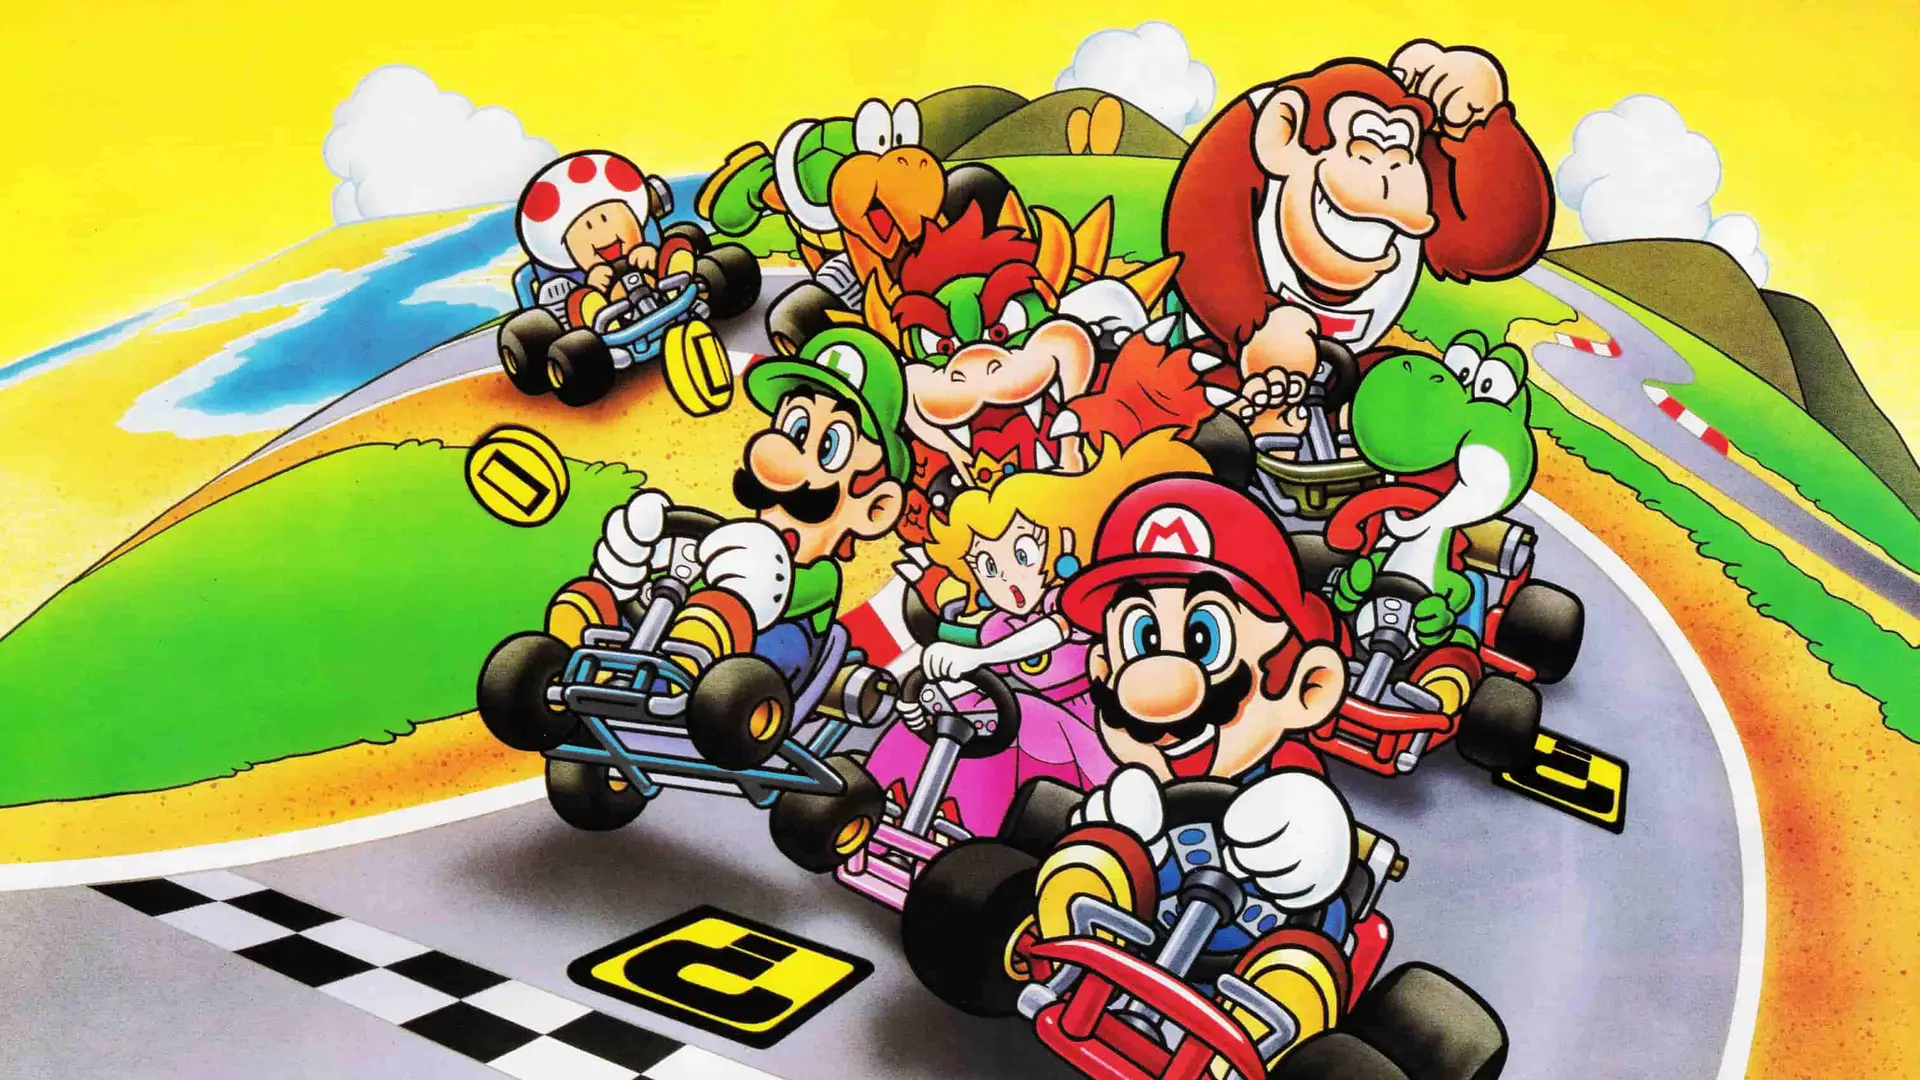 Artwork de l primer juego de Mario Kart para representar el lanzamiento de su ultima edicion Mario Kart 9